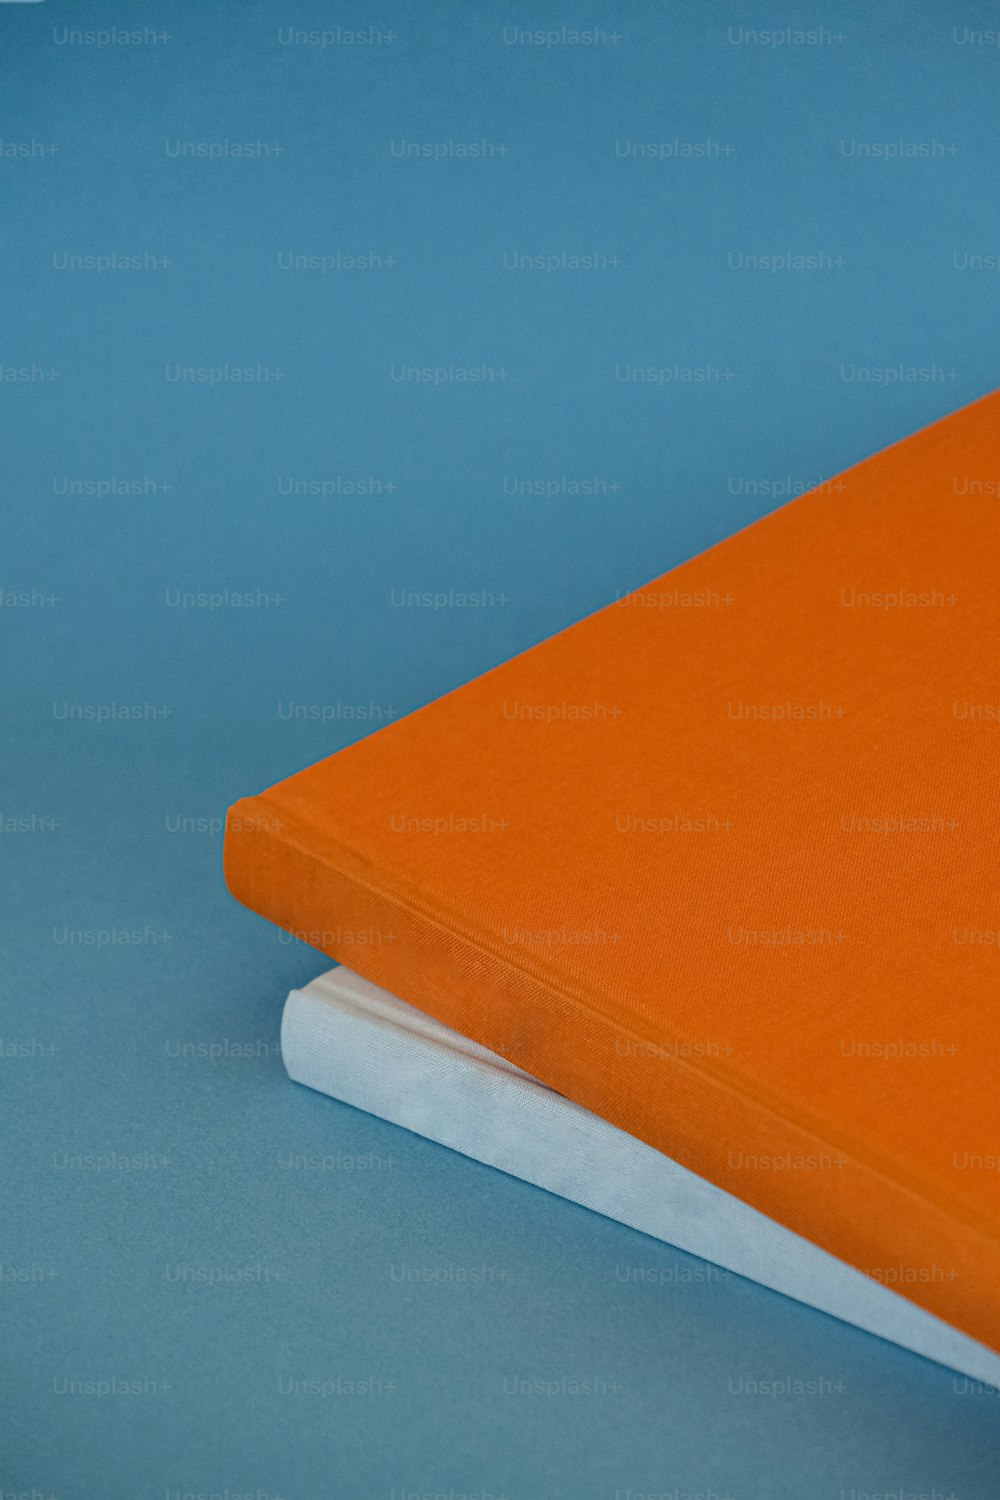 Un cuaderno naranja encima de un libro blanco